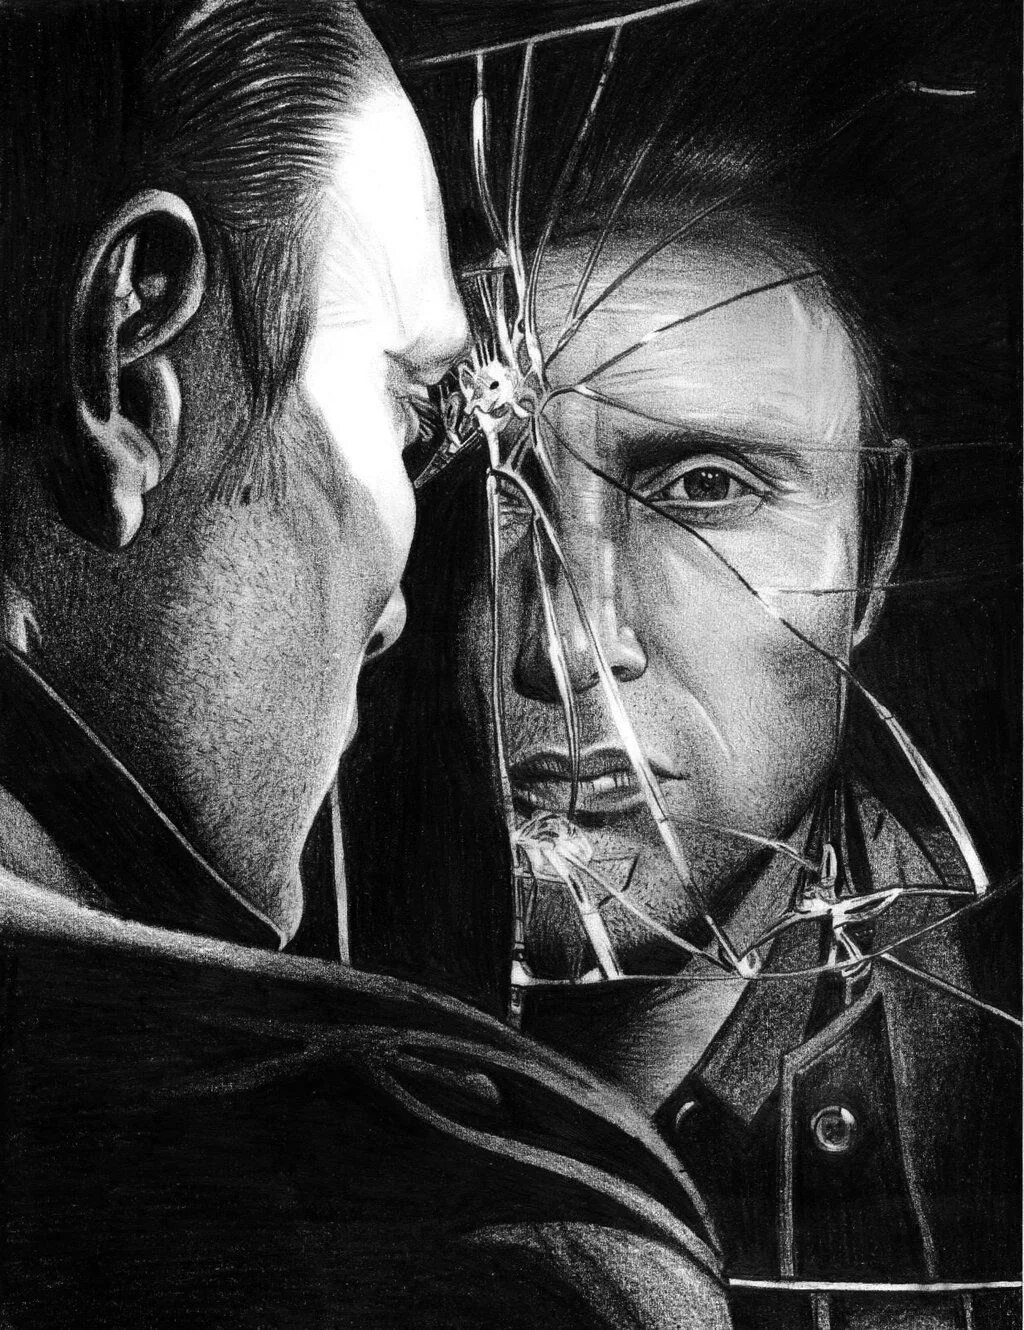 Лицо в разбитом зеркале. Отражение мужчины в разбитом зеркале. Мужское лицо разбитом зеркале. Отражение в разбитом зеркале арт. Разбитые отражения фф